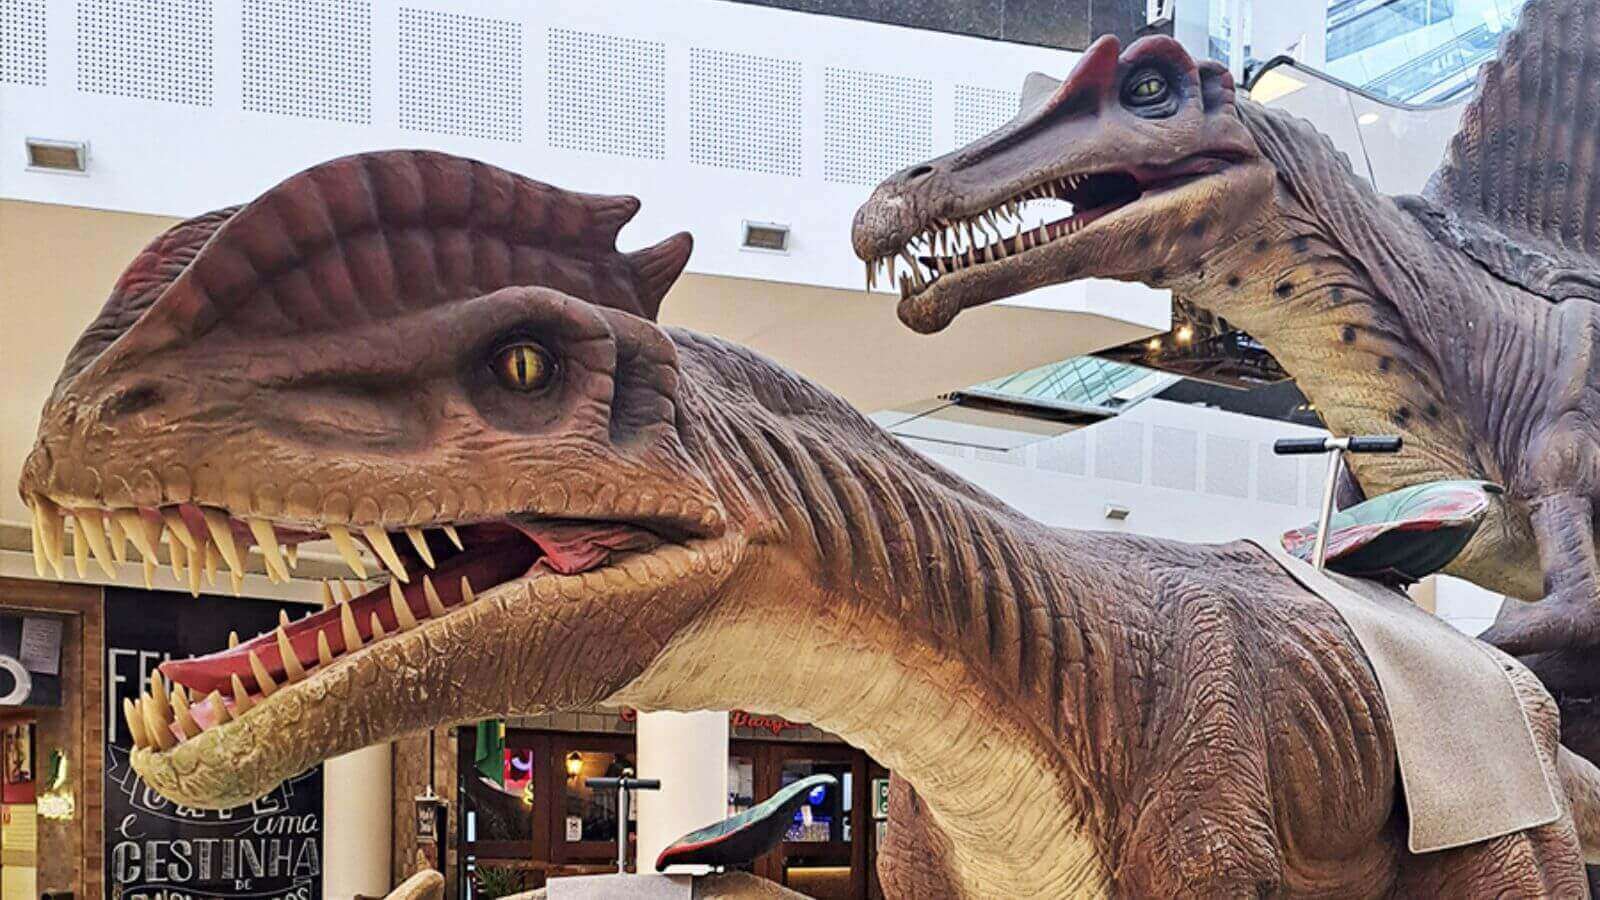 Dinossauros invadem o Maxi Shopping Jundiaí4